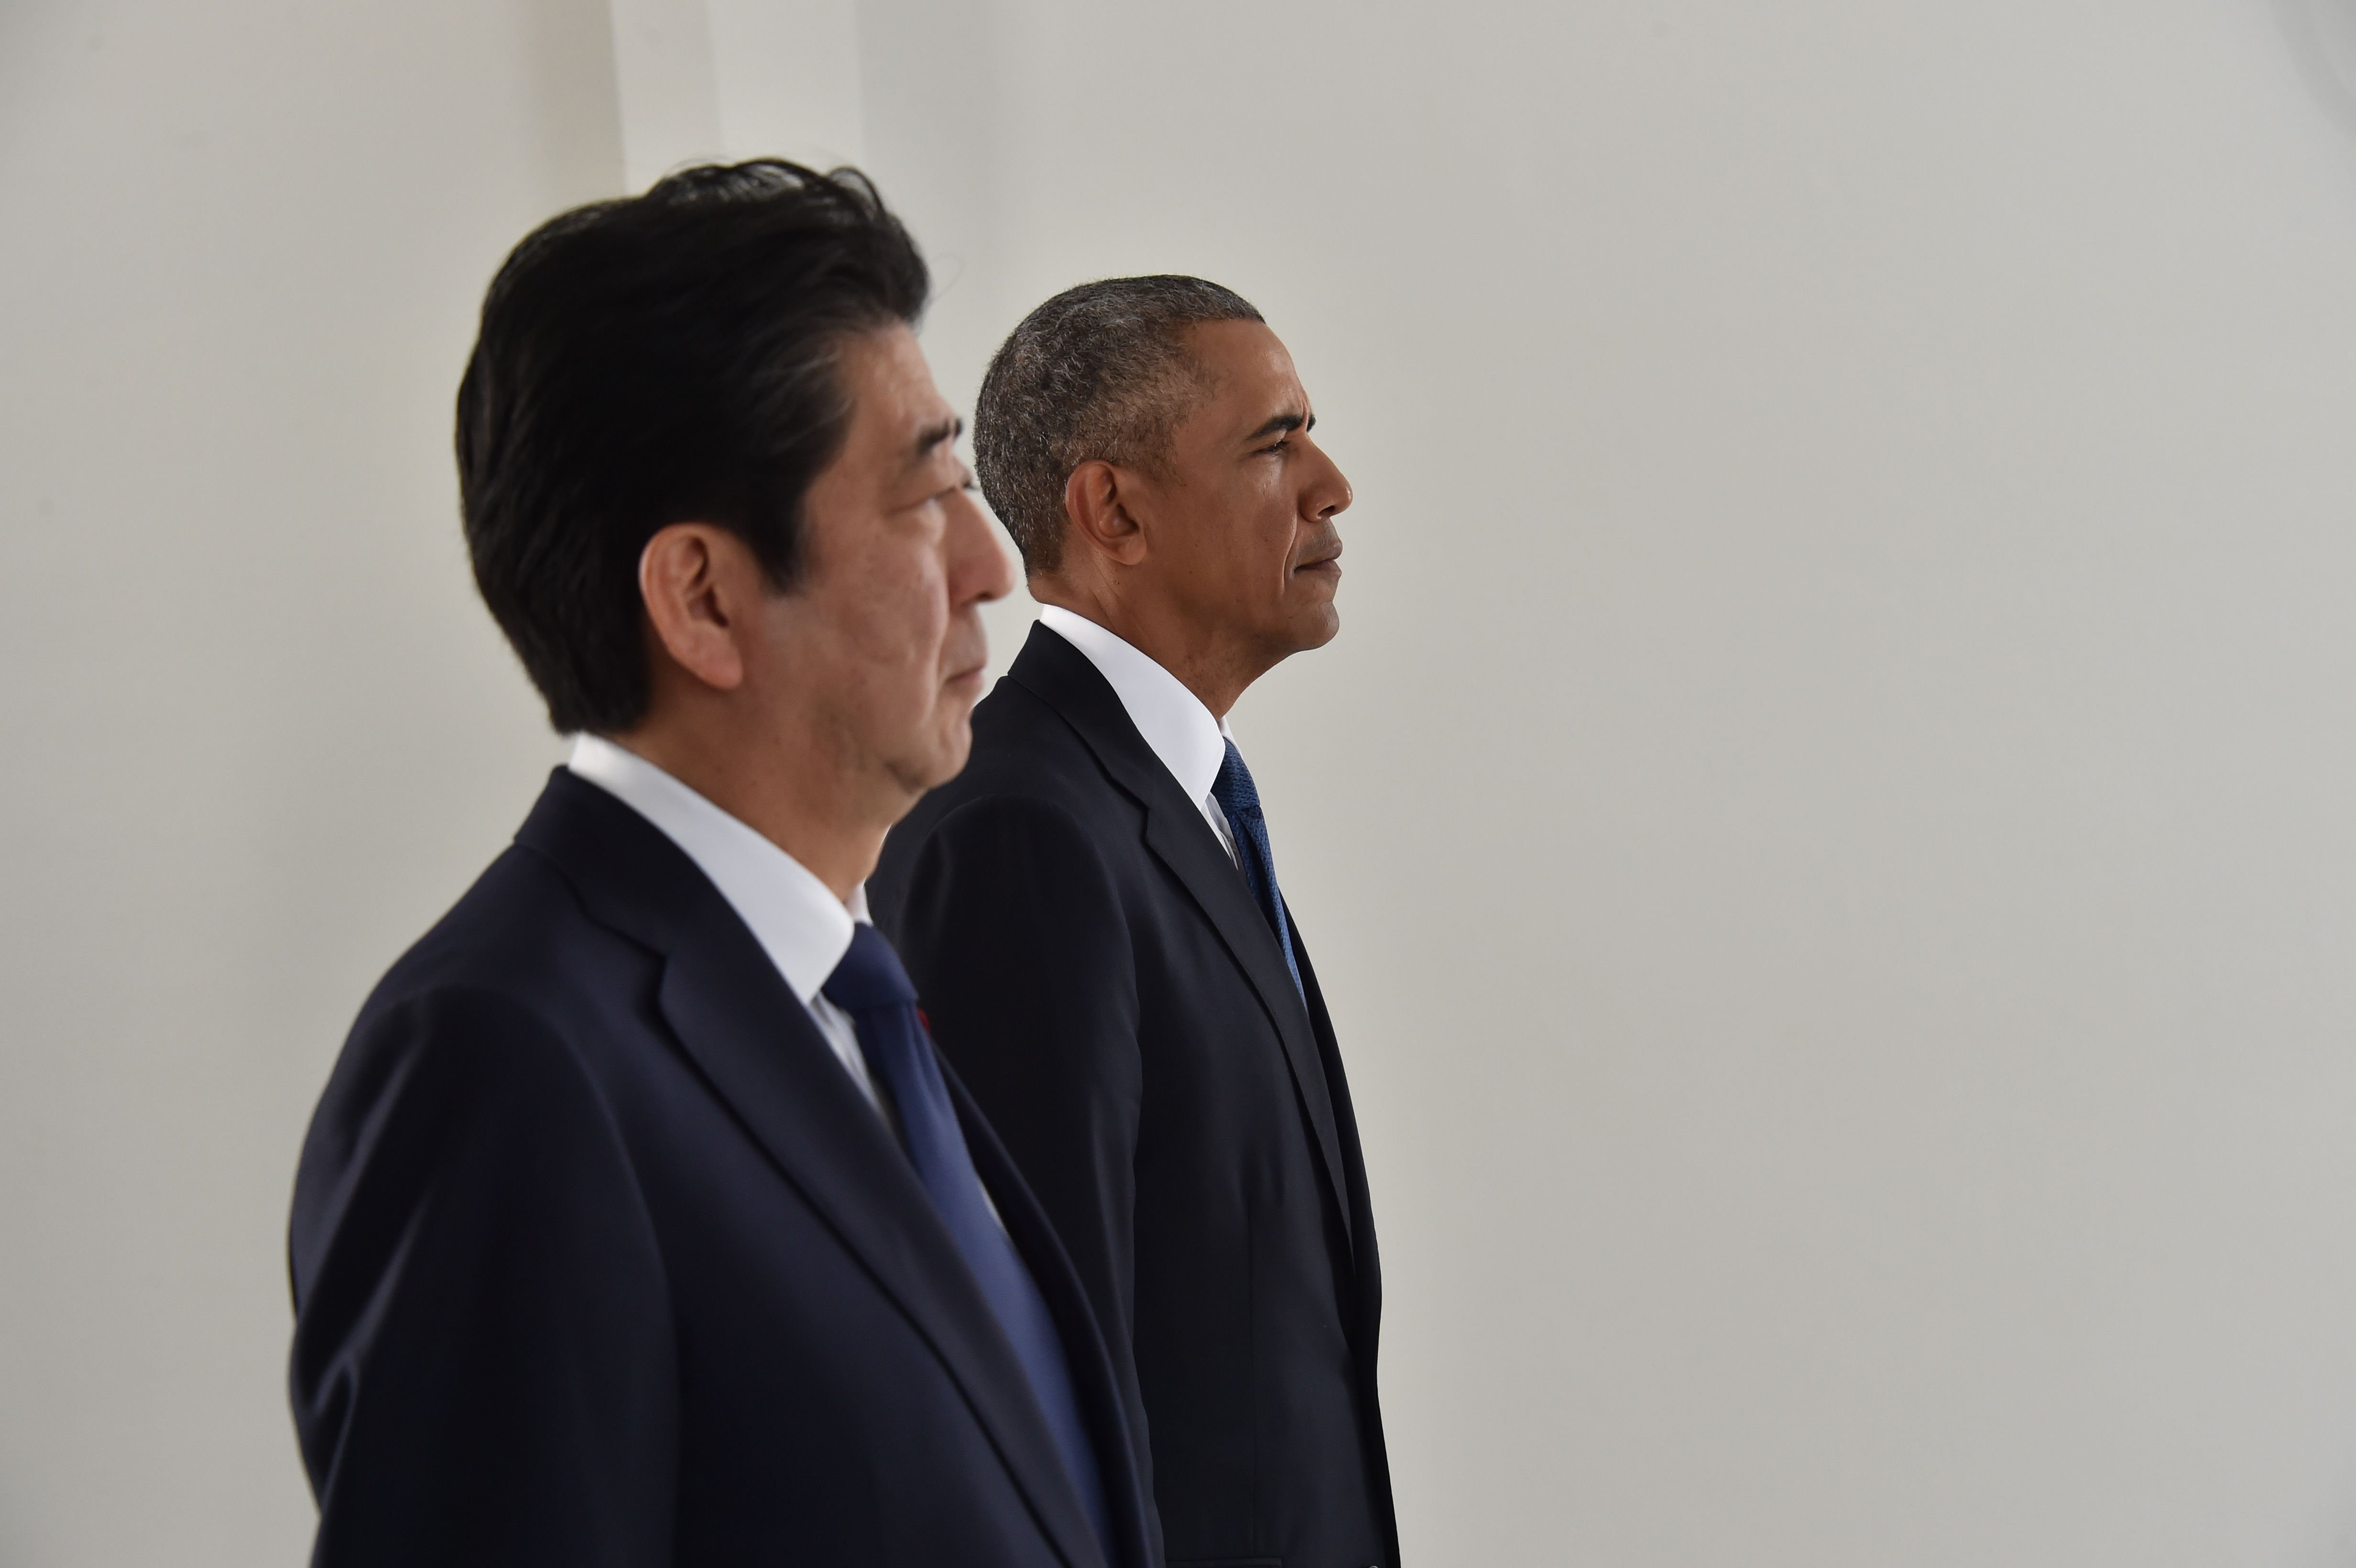 رئيس أمريكا و رئيس وزراء اليابان يزوران بيرل هاربور